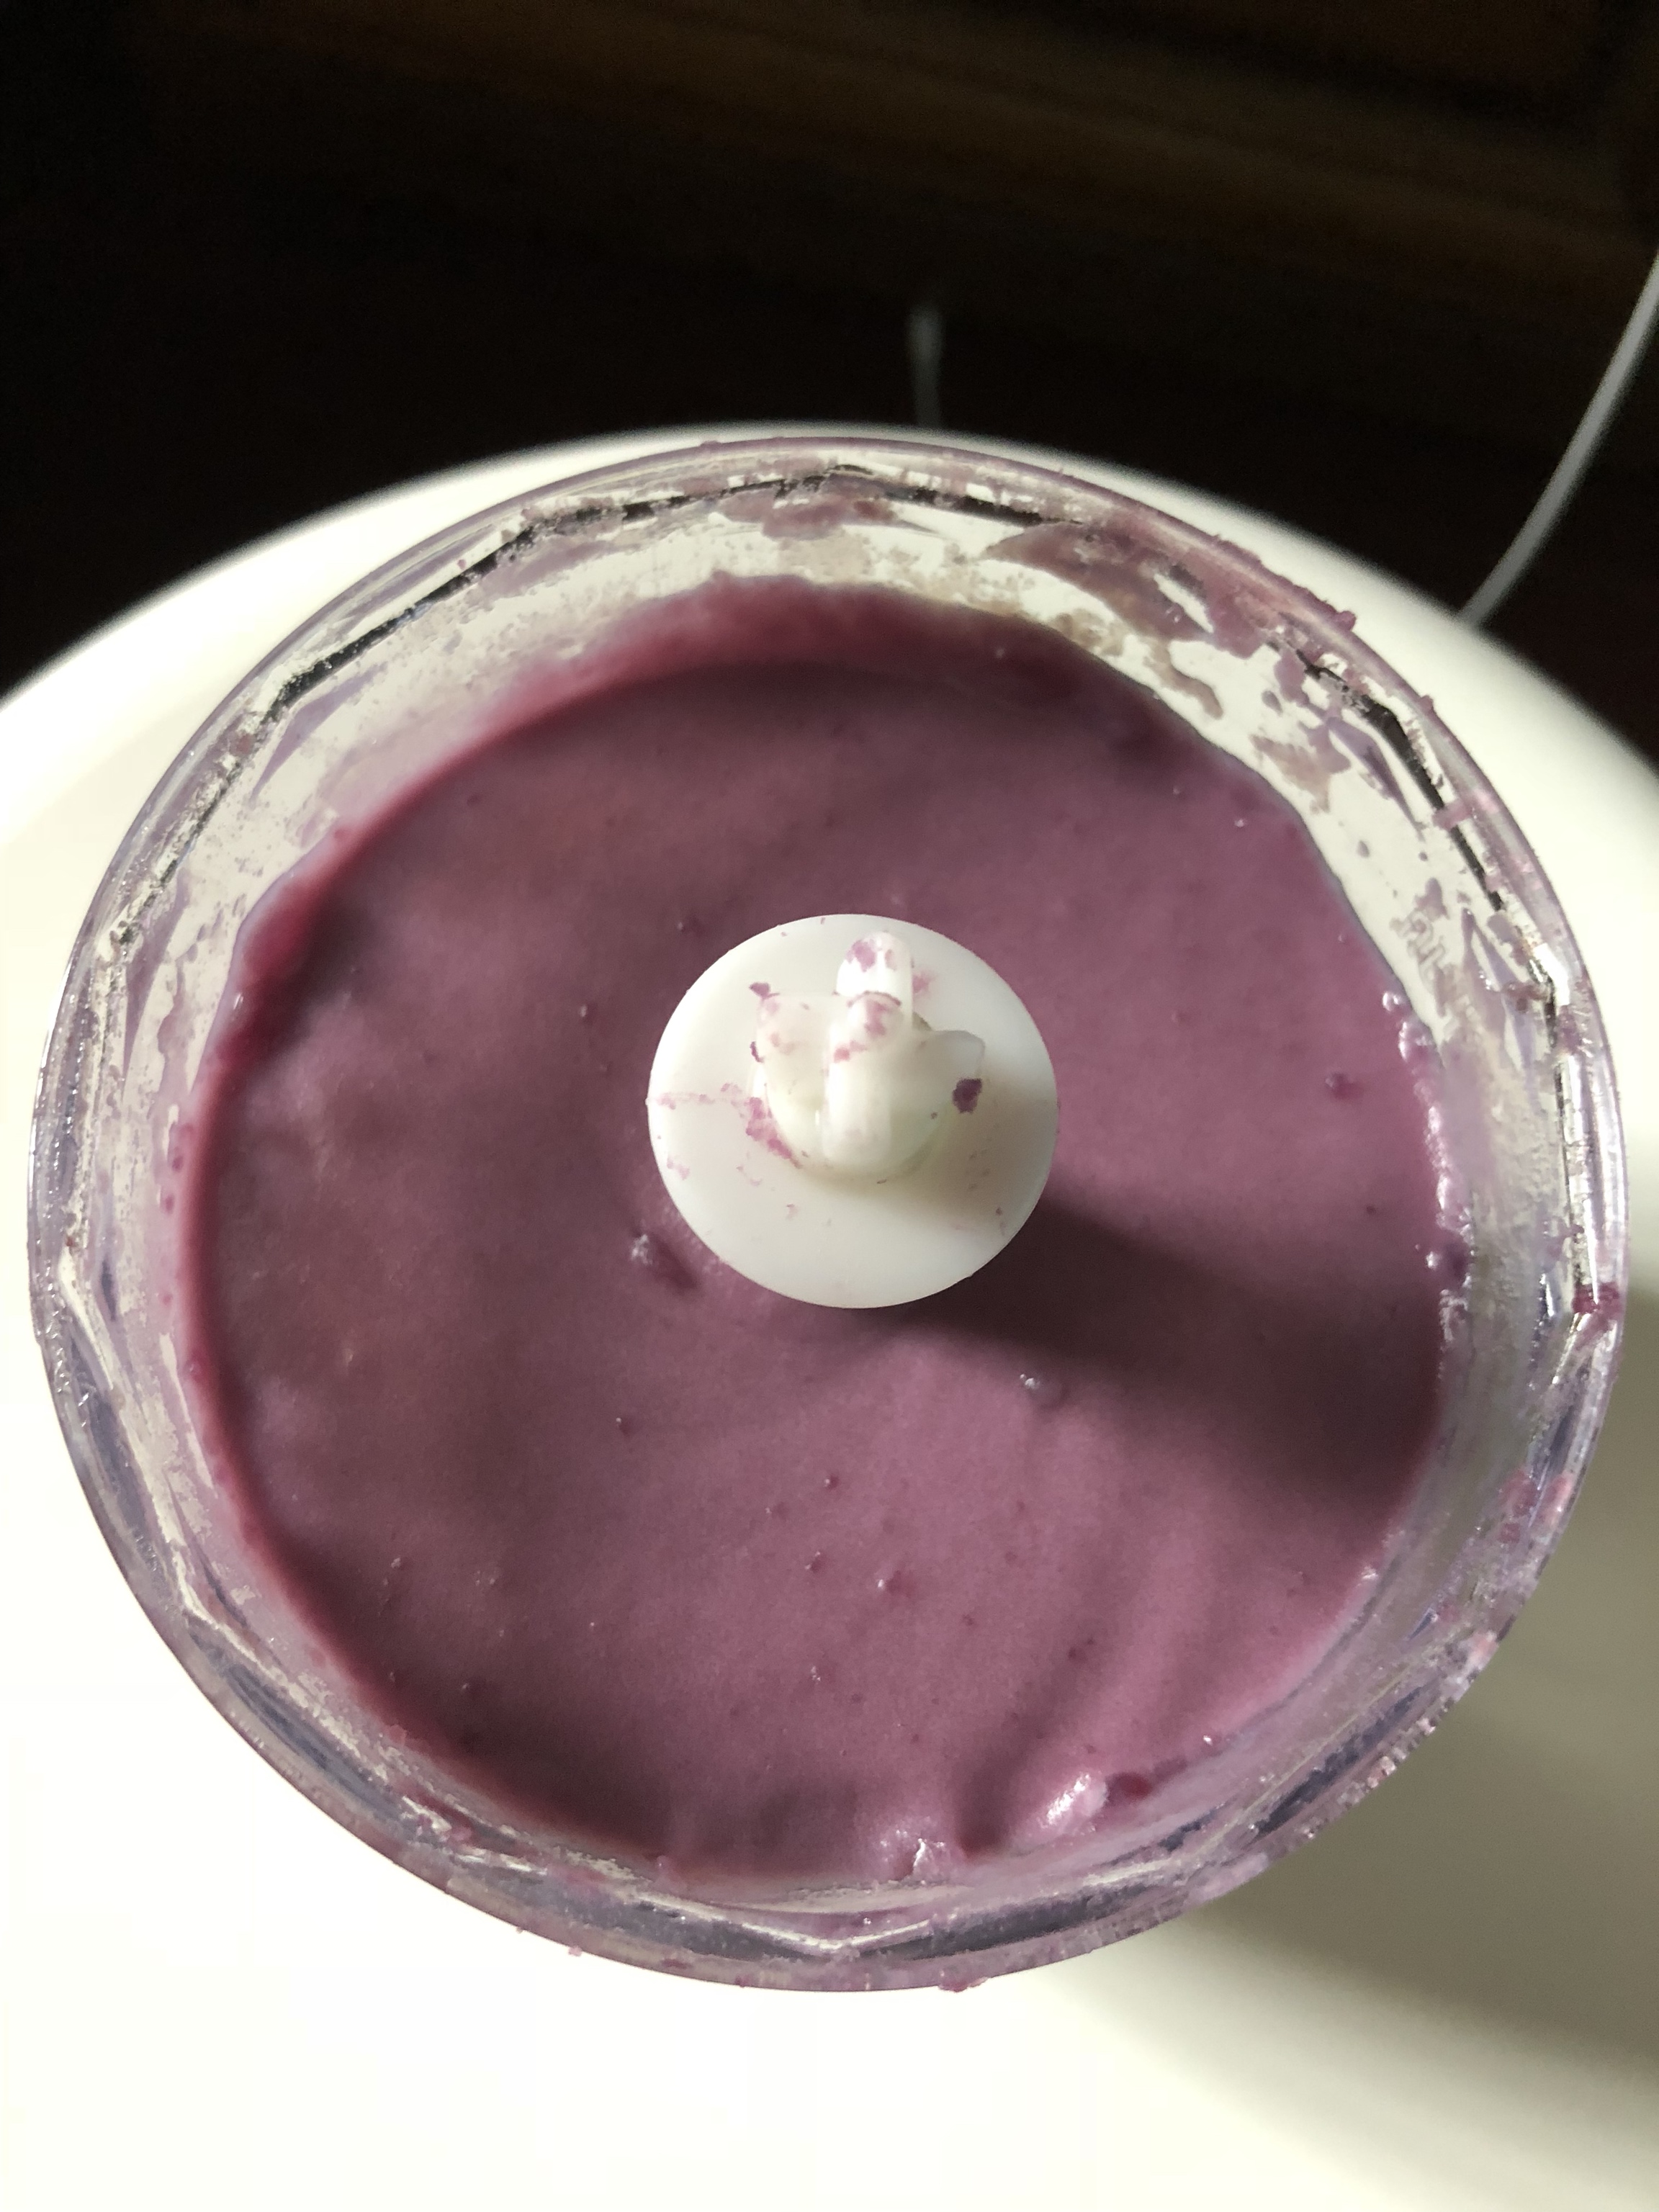 奶香紫薯泥的做法